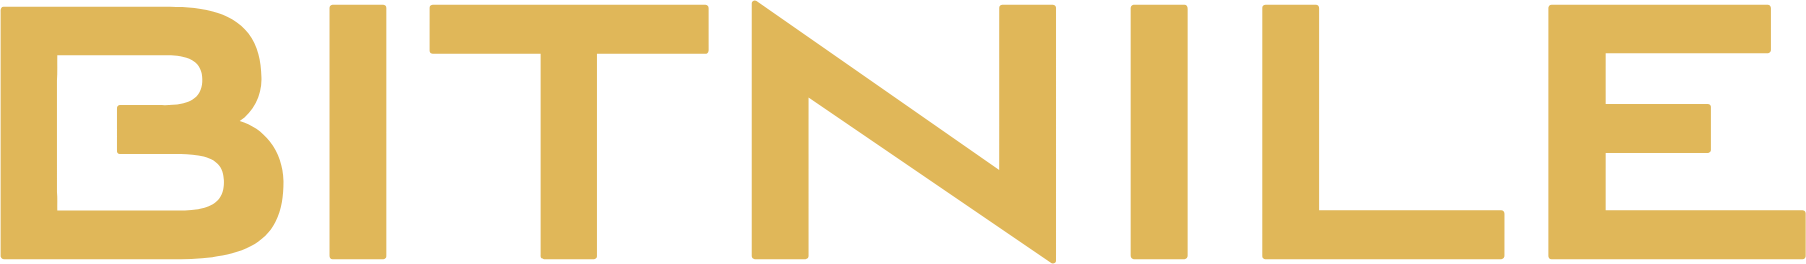 BitNile logo large (transparent PNG)